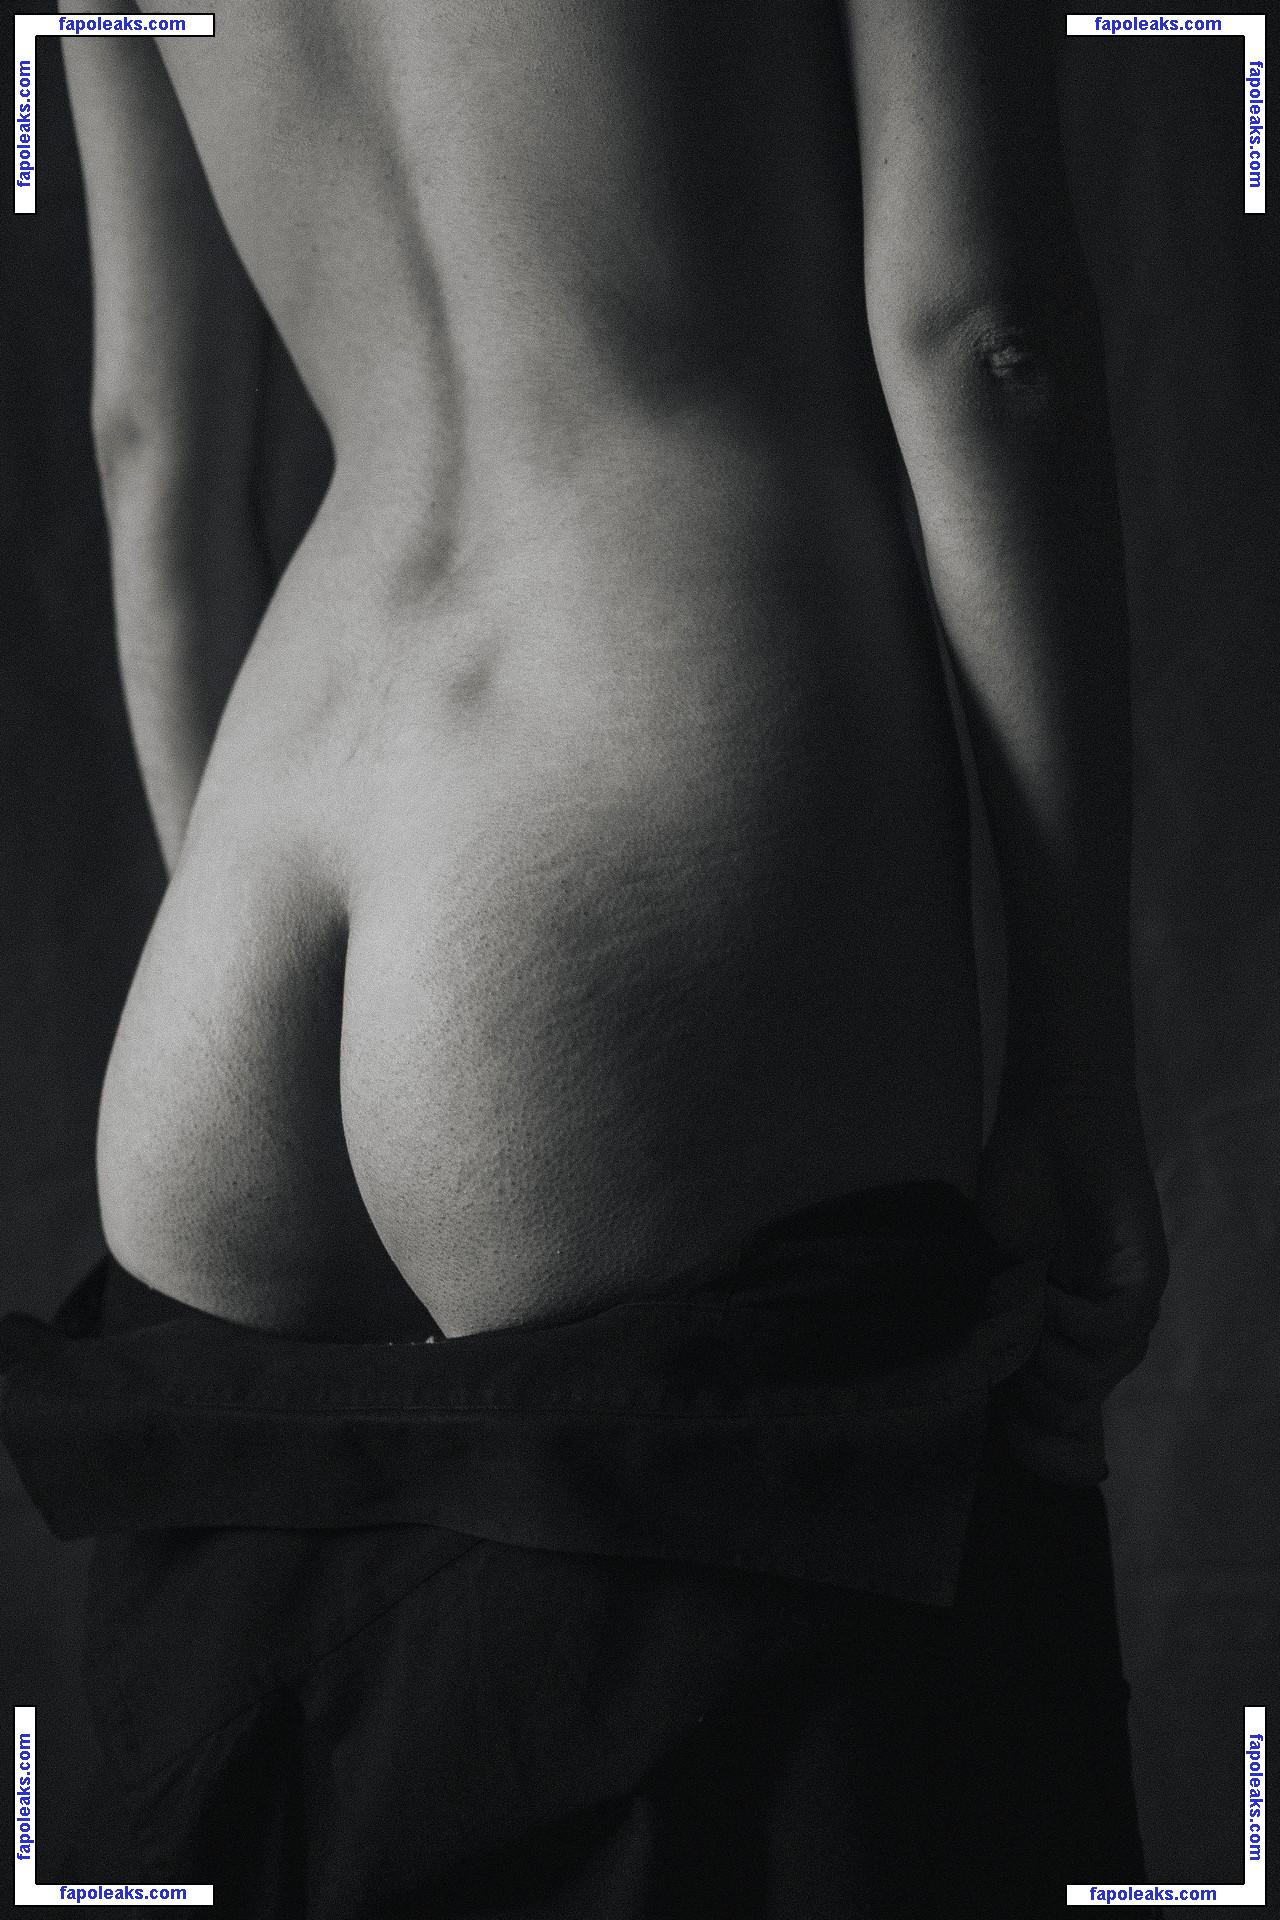 Valeria Shashenok / valeriahaver / valerisssh nude photo #0010 from OnlyFans